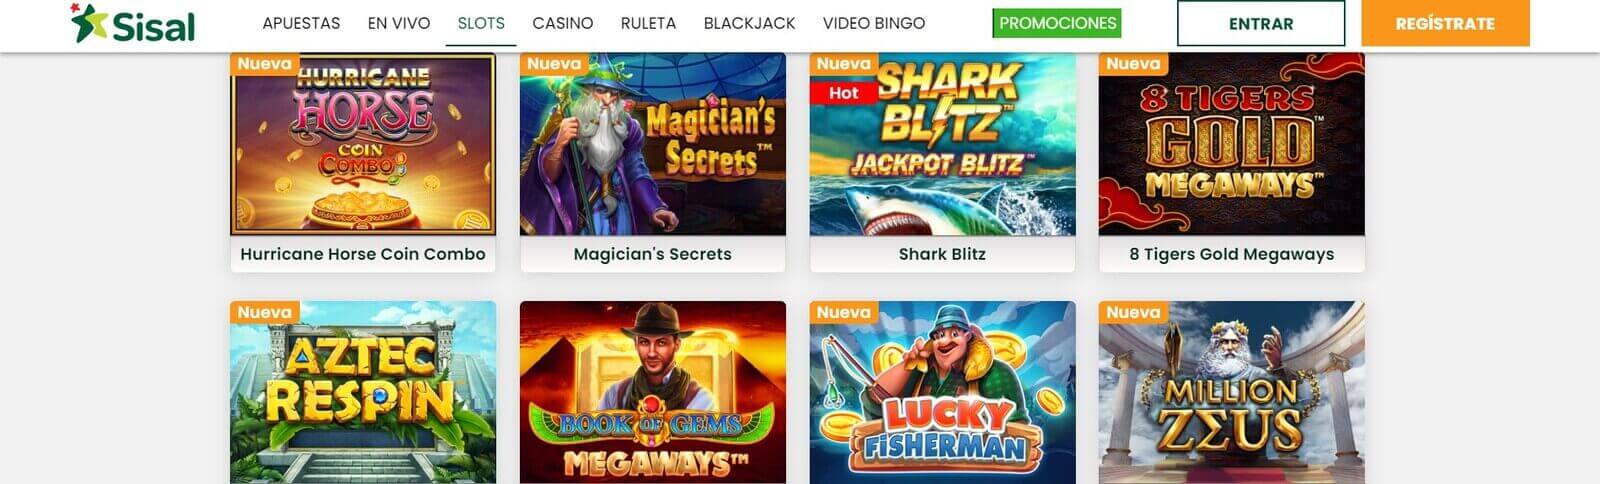 Sisal Casino online   juega a las tragaperras en casino Sisal en España